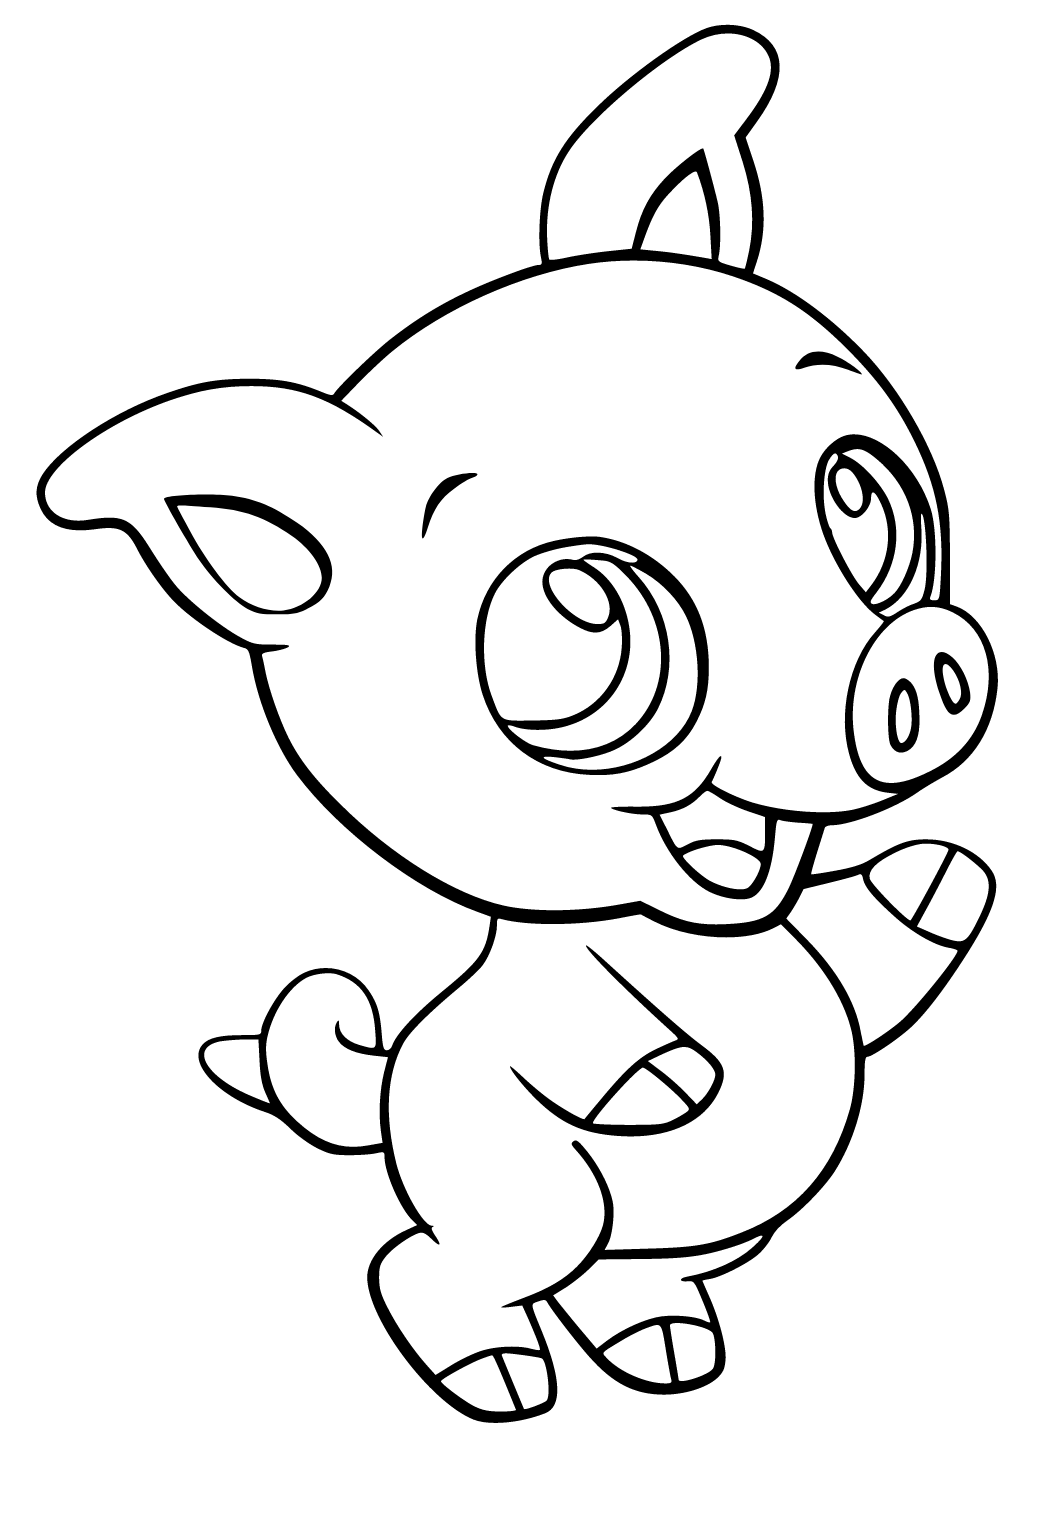 Desenho de Mamãe Pig para colorir  Desenhos para colorir e imprimir gratis